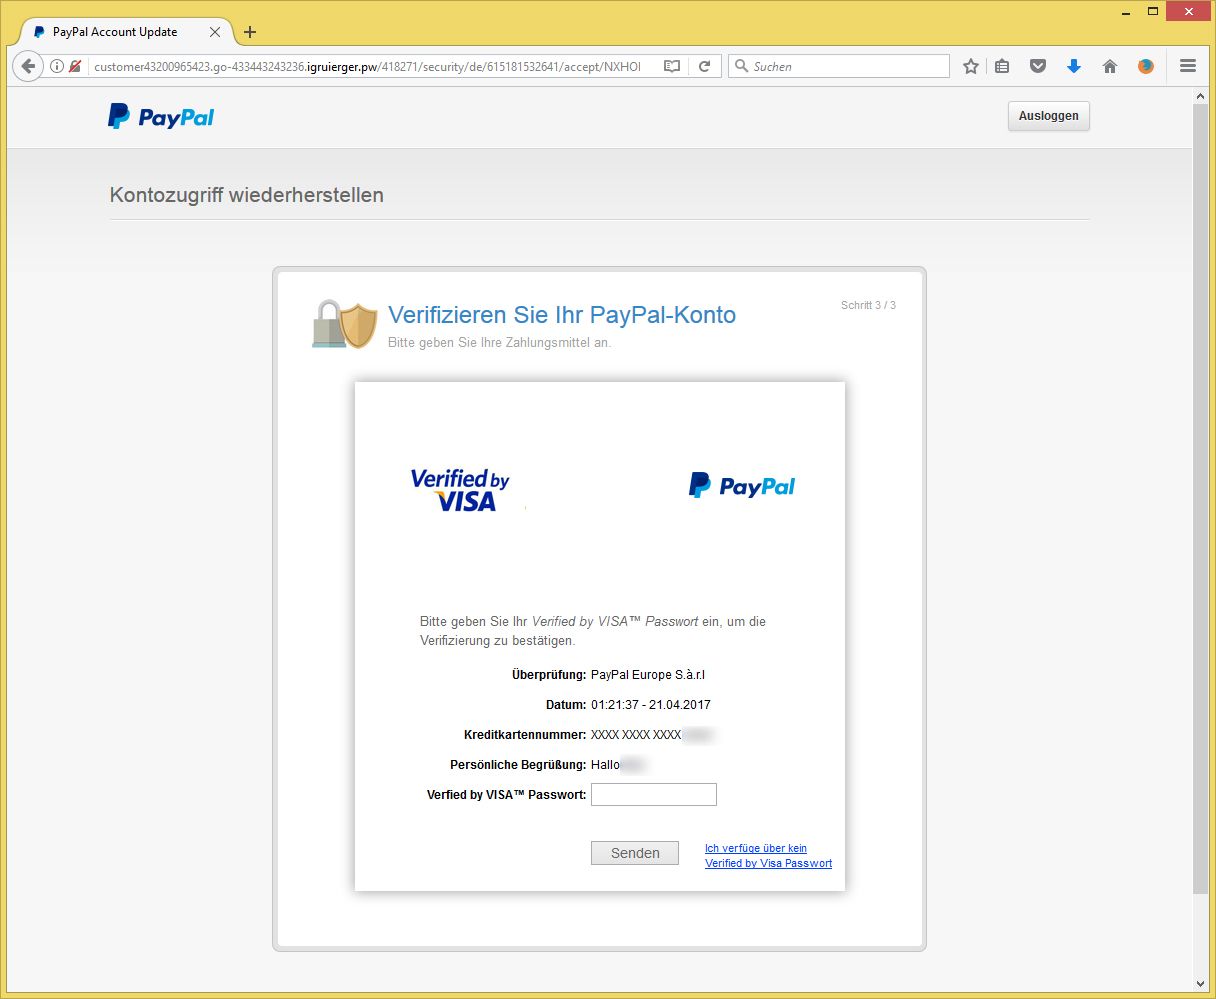 Verifizieren Sie Ihr Paypal-Konto